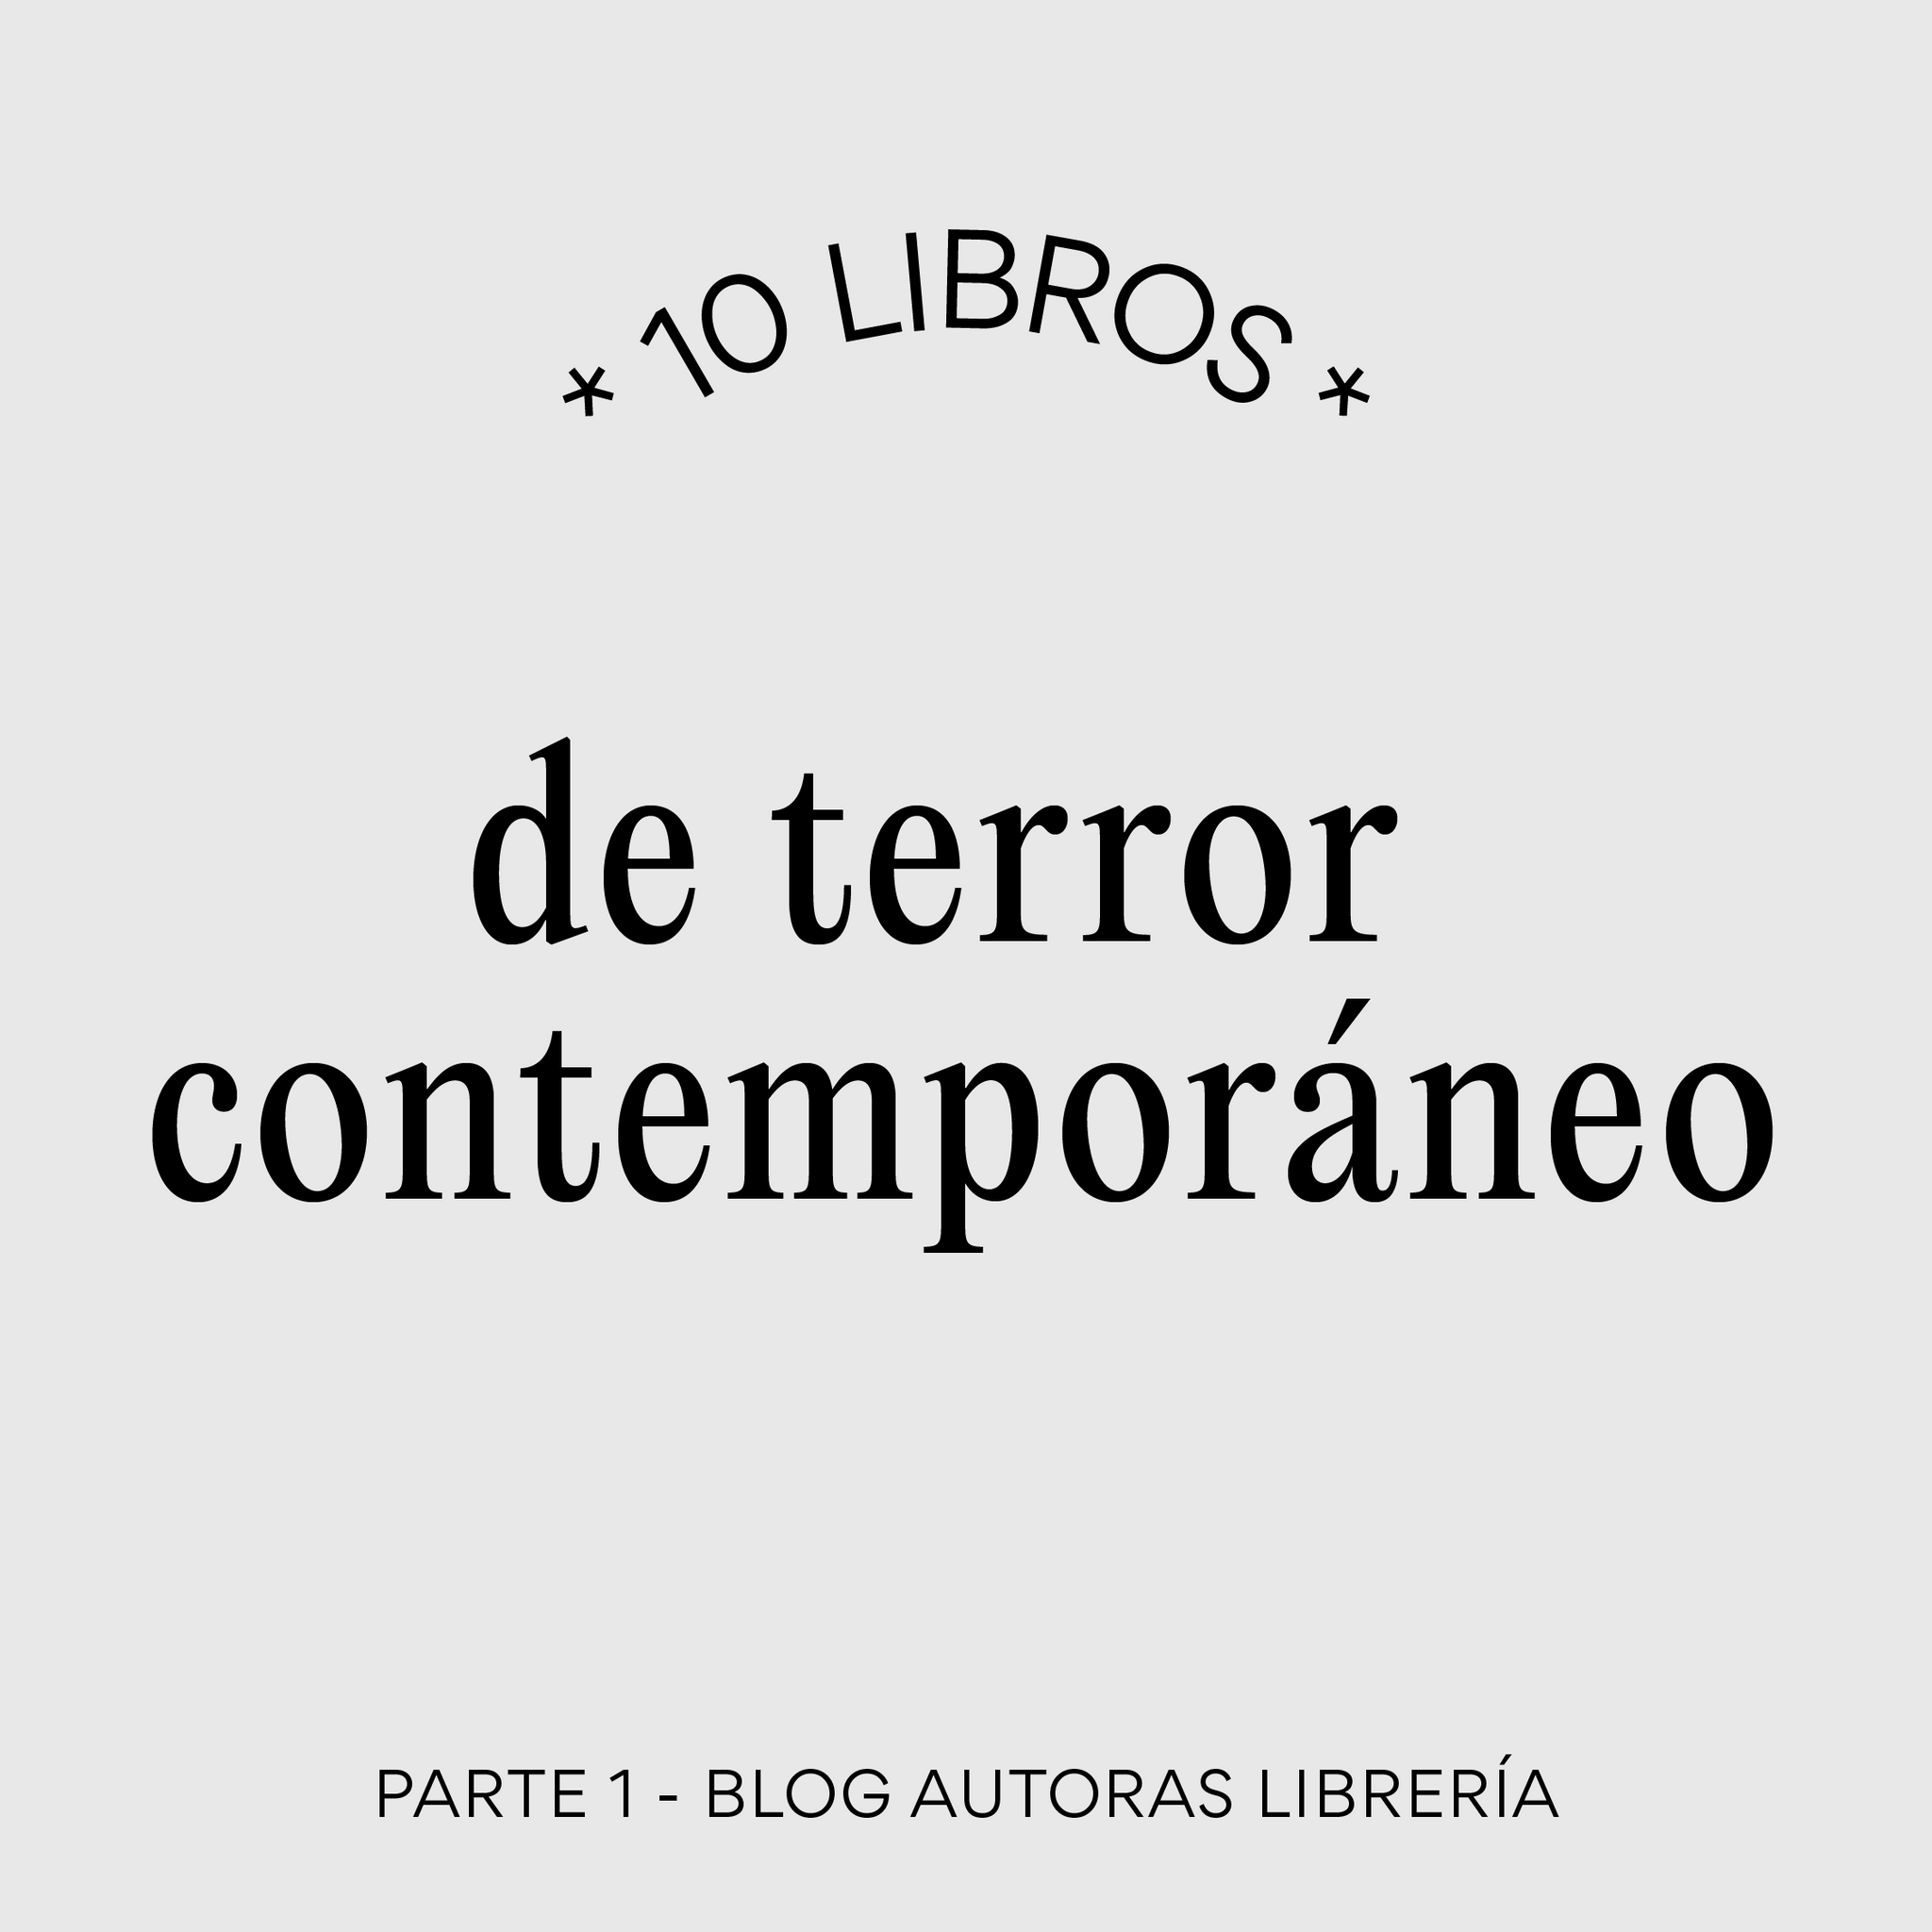 10 libros de terror contemporáneo - Parte 1